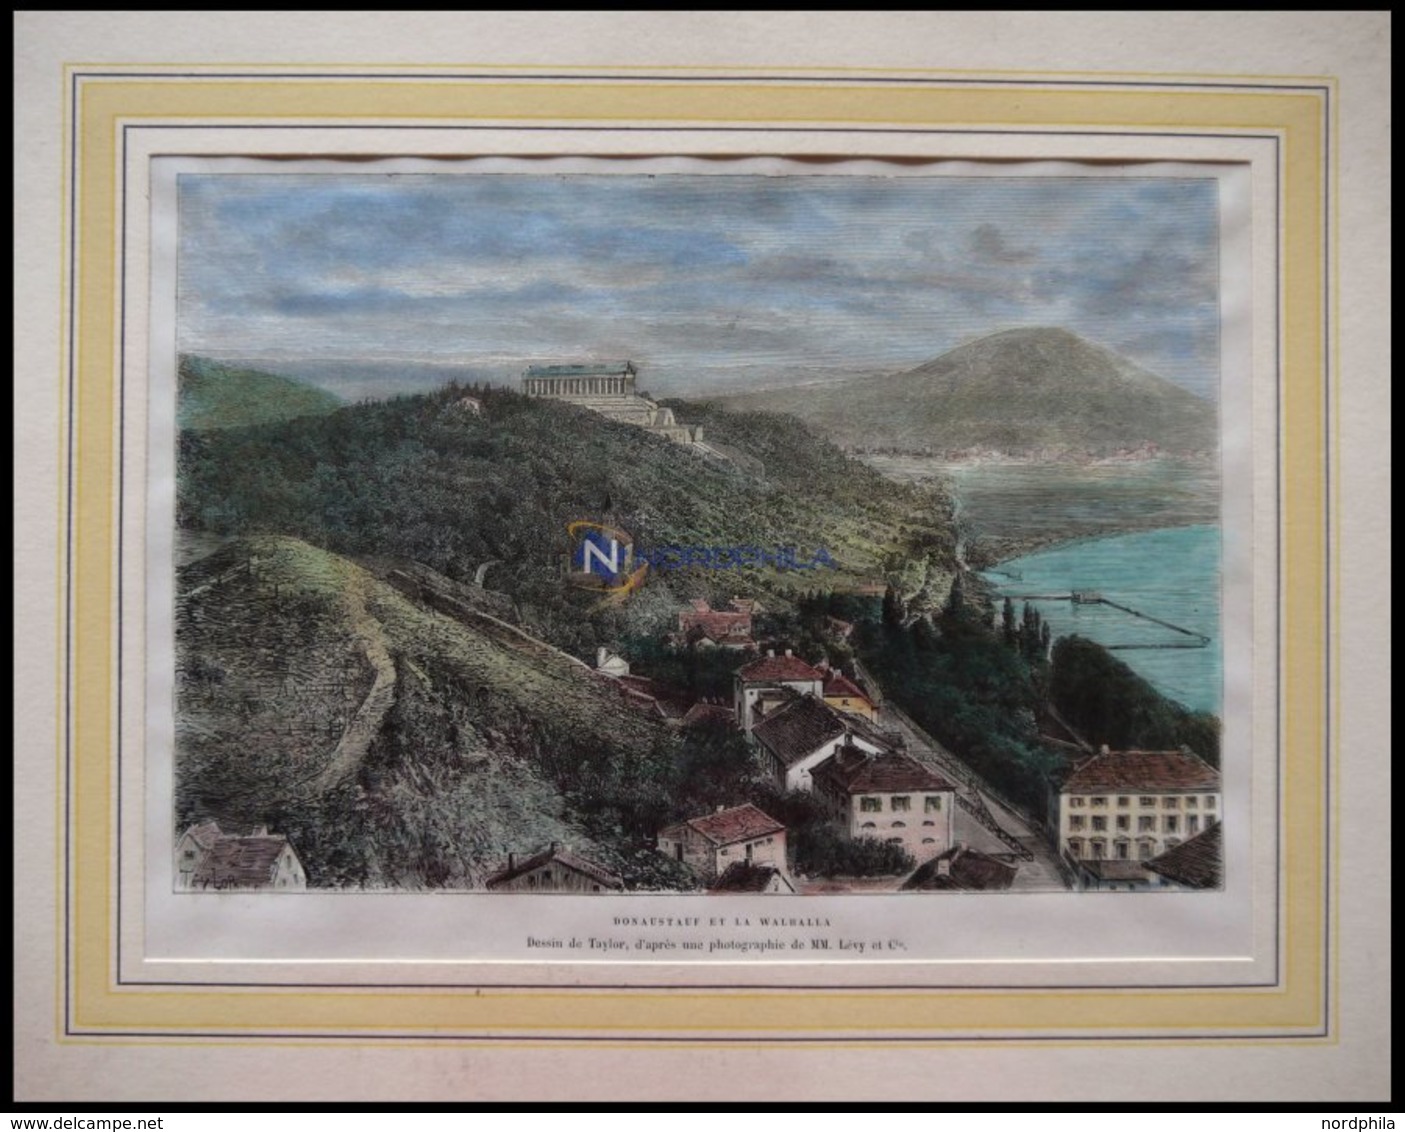 DONAUSTAUF, Gesamtansicht Mit Walhalls, Kolorierter Holzstich Um 1880 - Lithographien